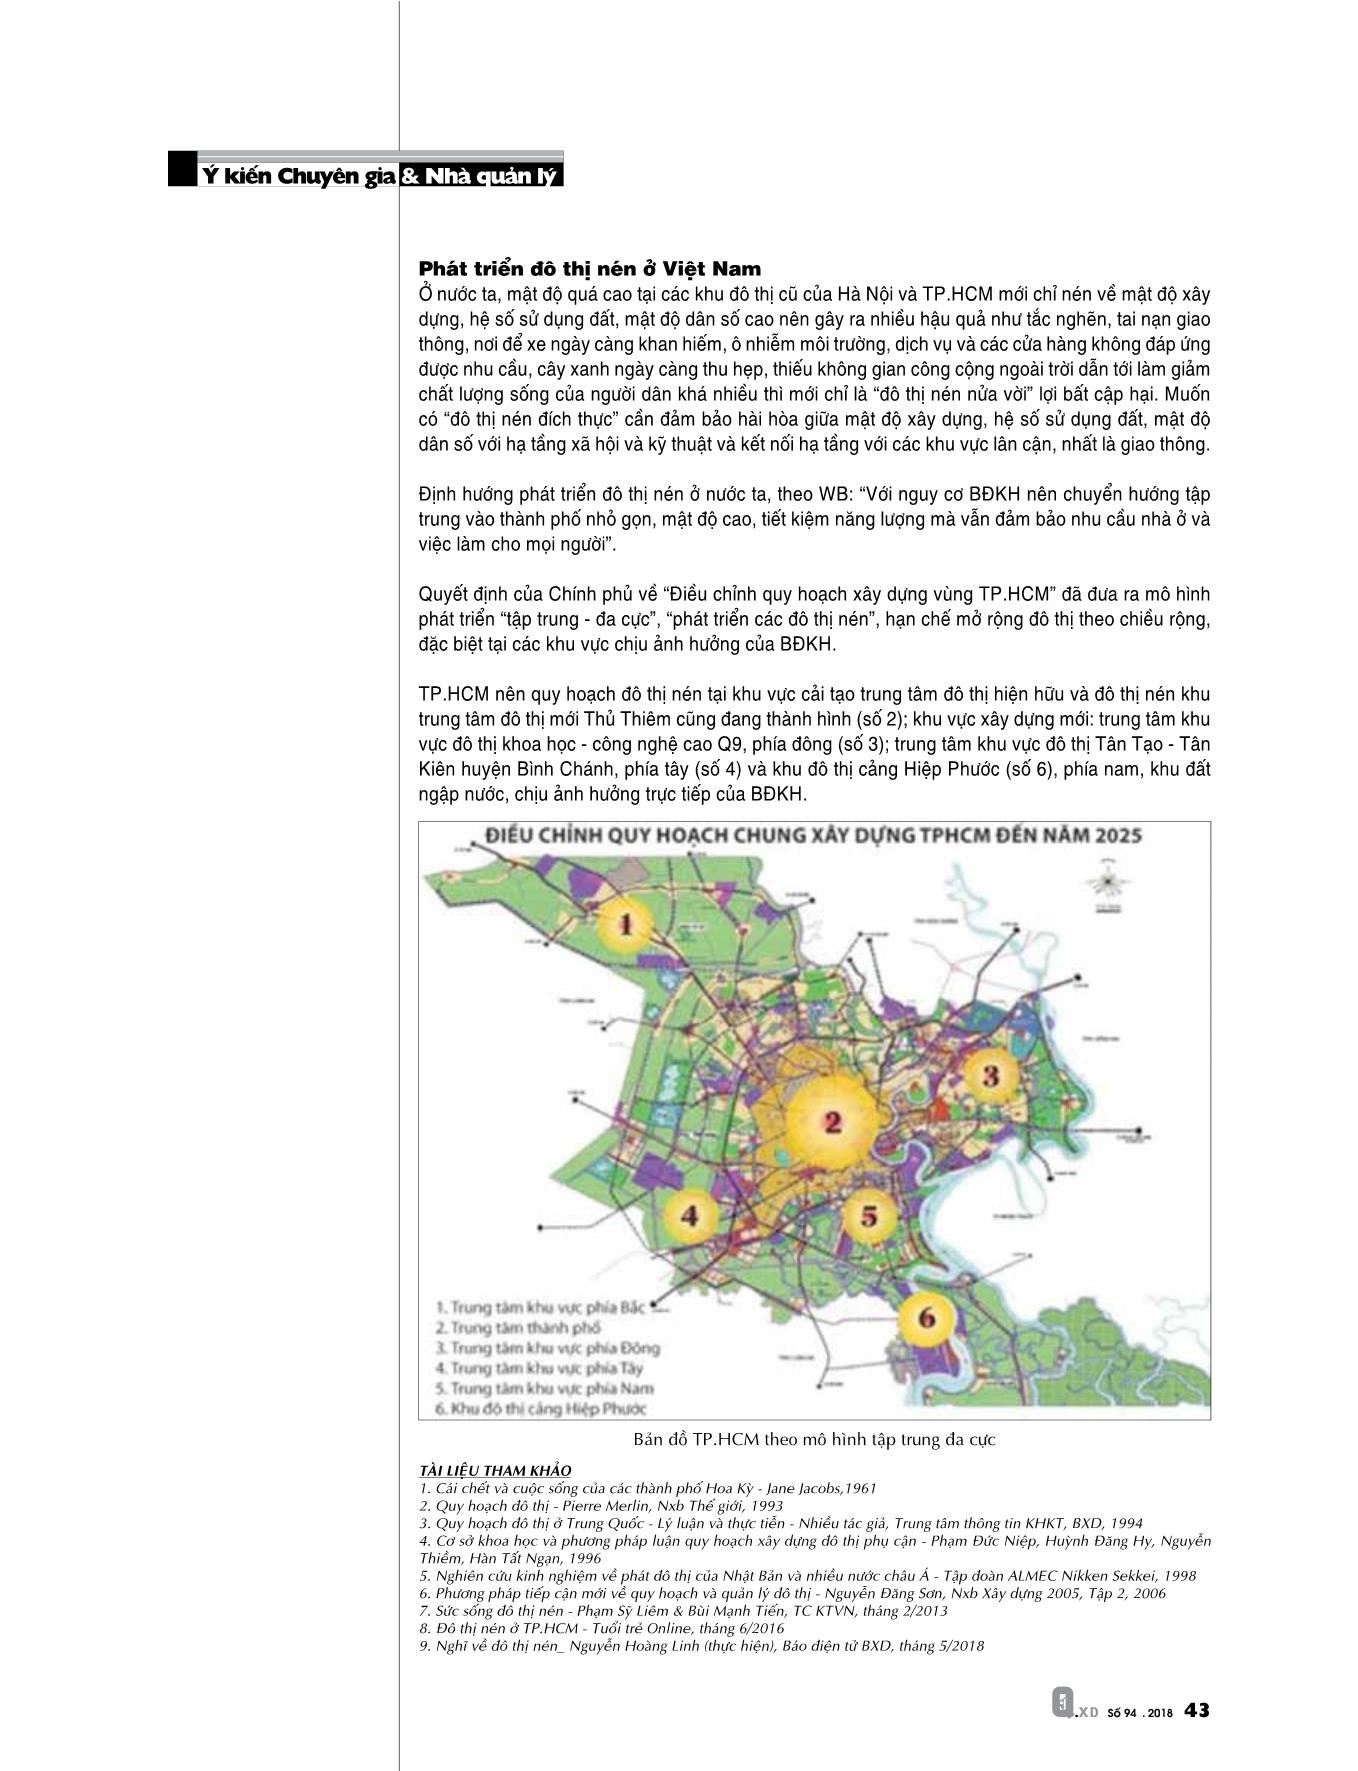 Thảo luận về phát triển đô thị “nén” ở Việt Nam trang 10